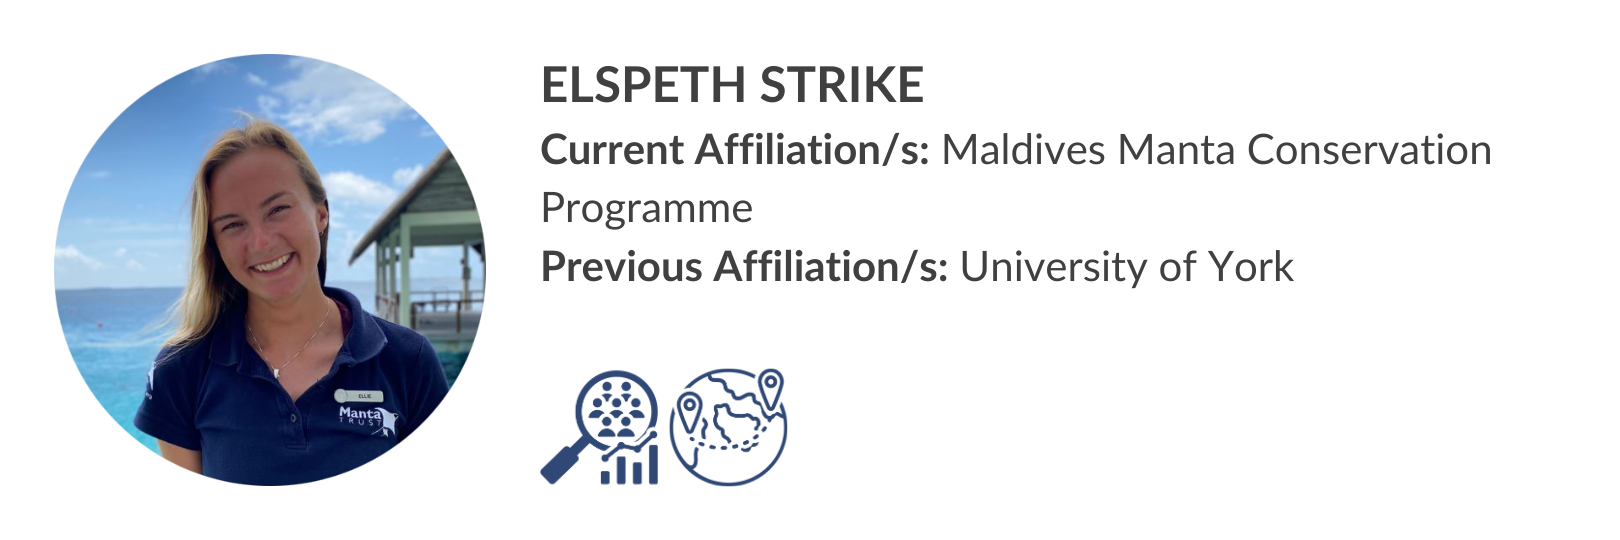 Elspeth Strike.png